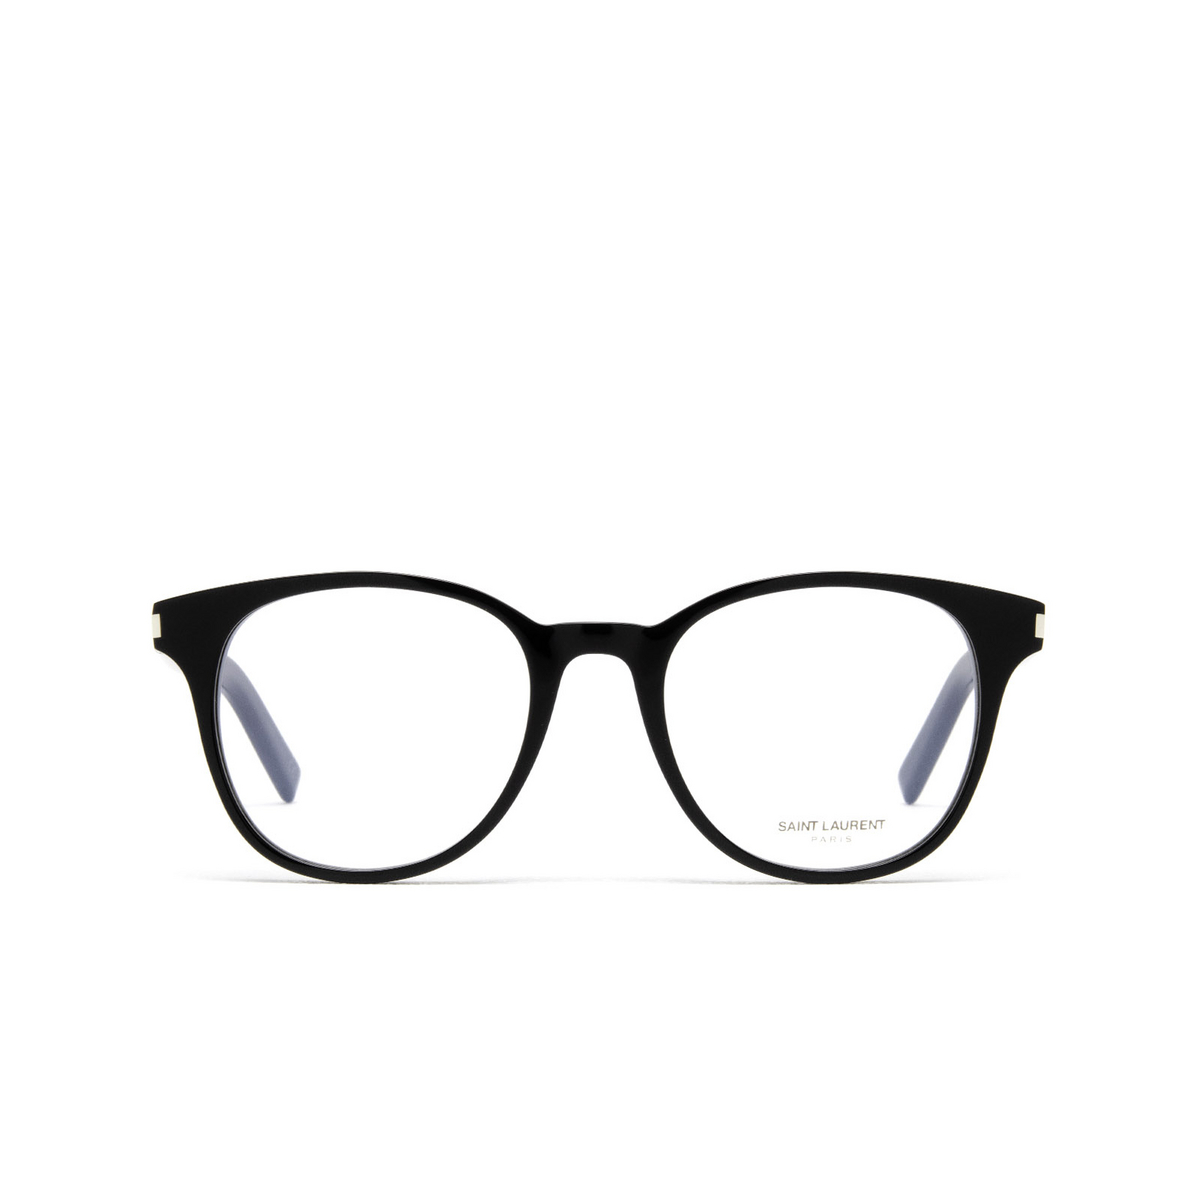 Saint Laurent® Round Eyeglasses: SL 523 color 001 Black - front view